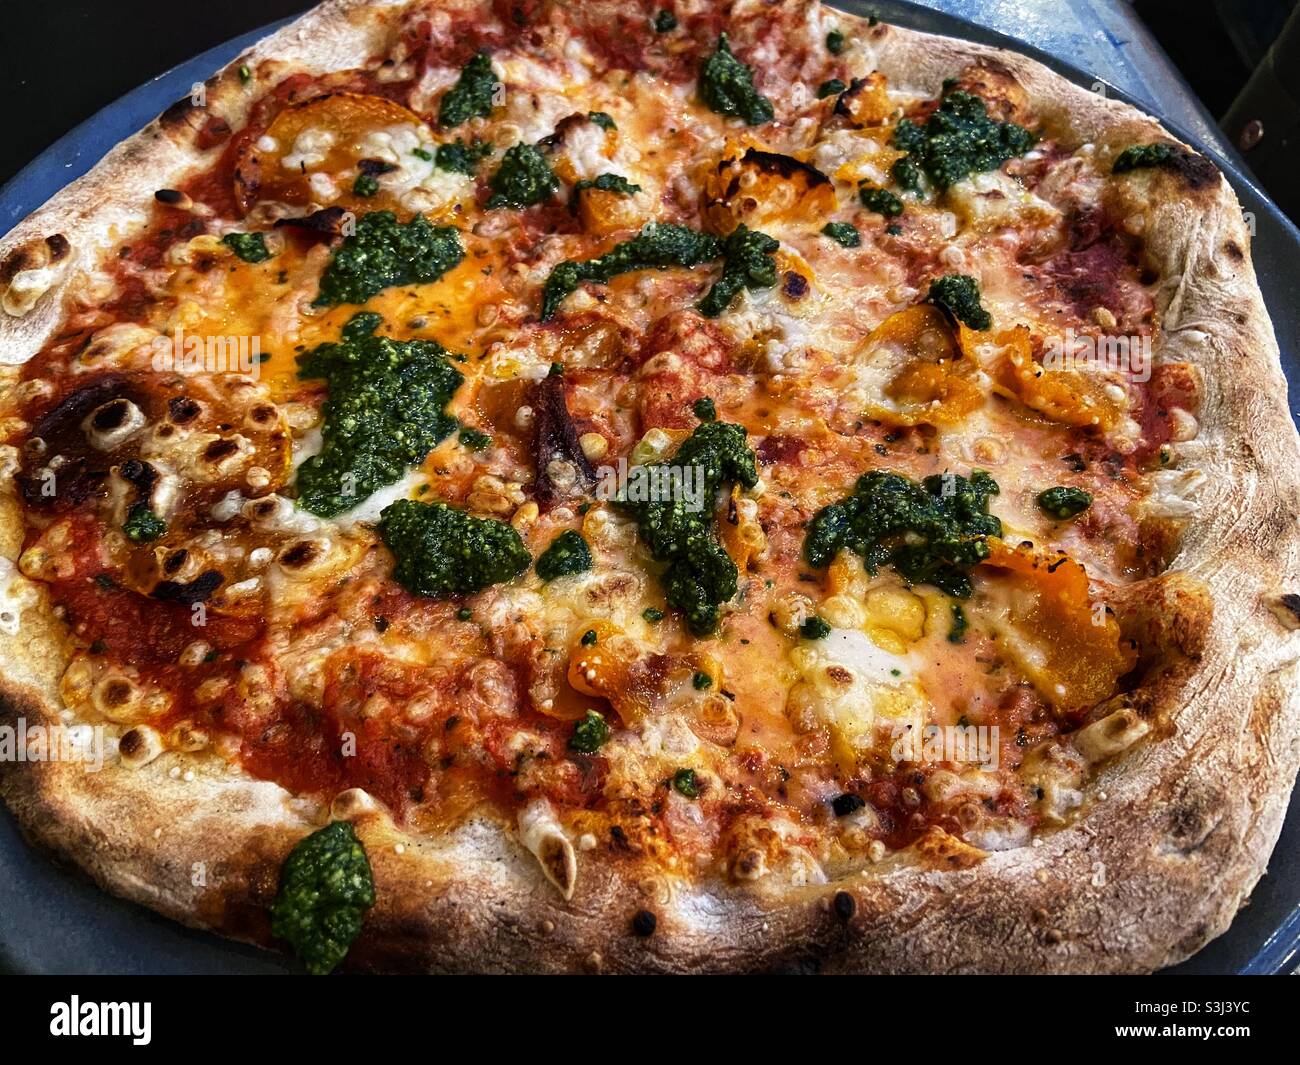 Pizza vegetariana con pesto y calabaza. Foto de stock